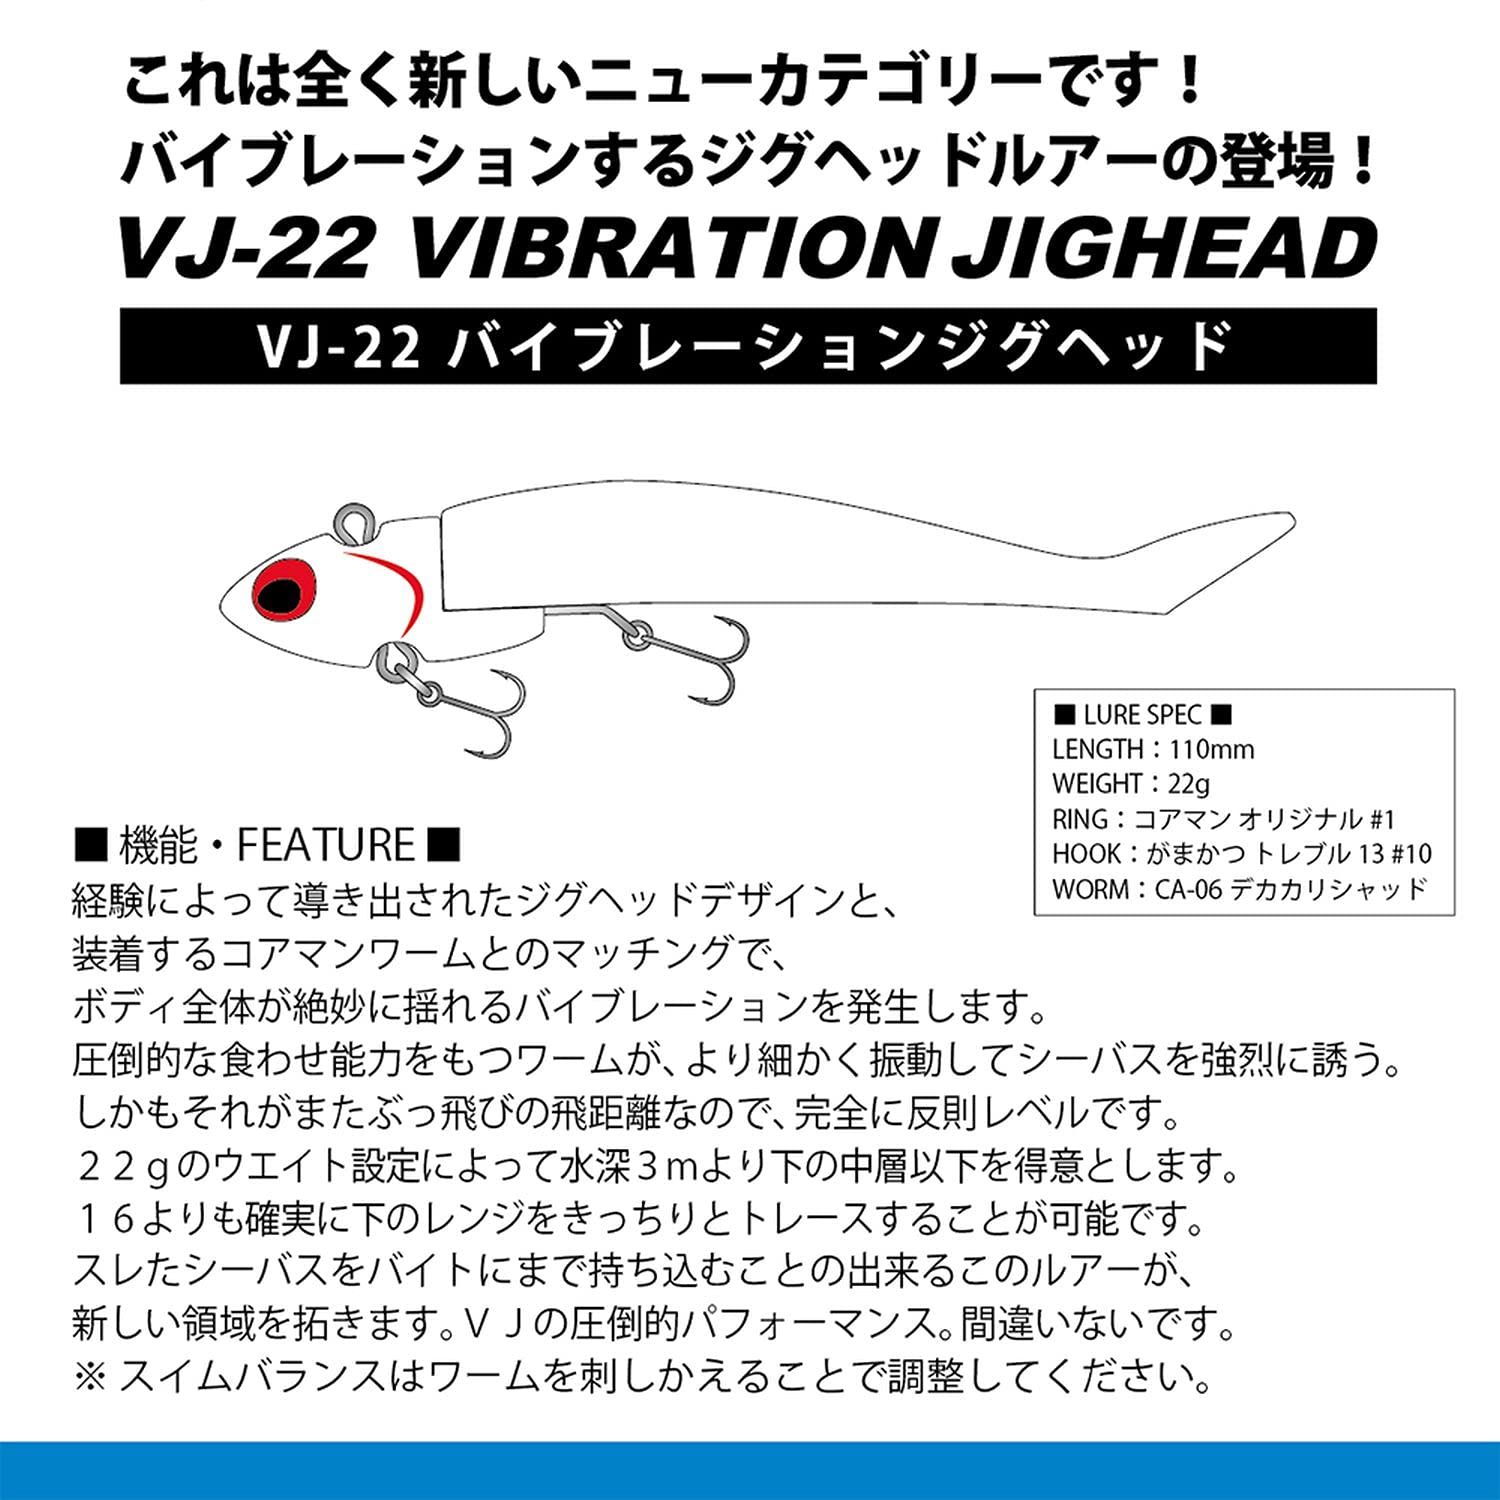 コアマン(Coreman) VJ-22 バイブレーションジグヘッド #064 ピンクヘッド/ケイムラパール [#064 ピンクヘッド/ケイムラパール]  [110mm/22g] - メルカリ